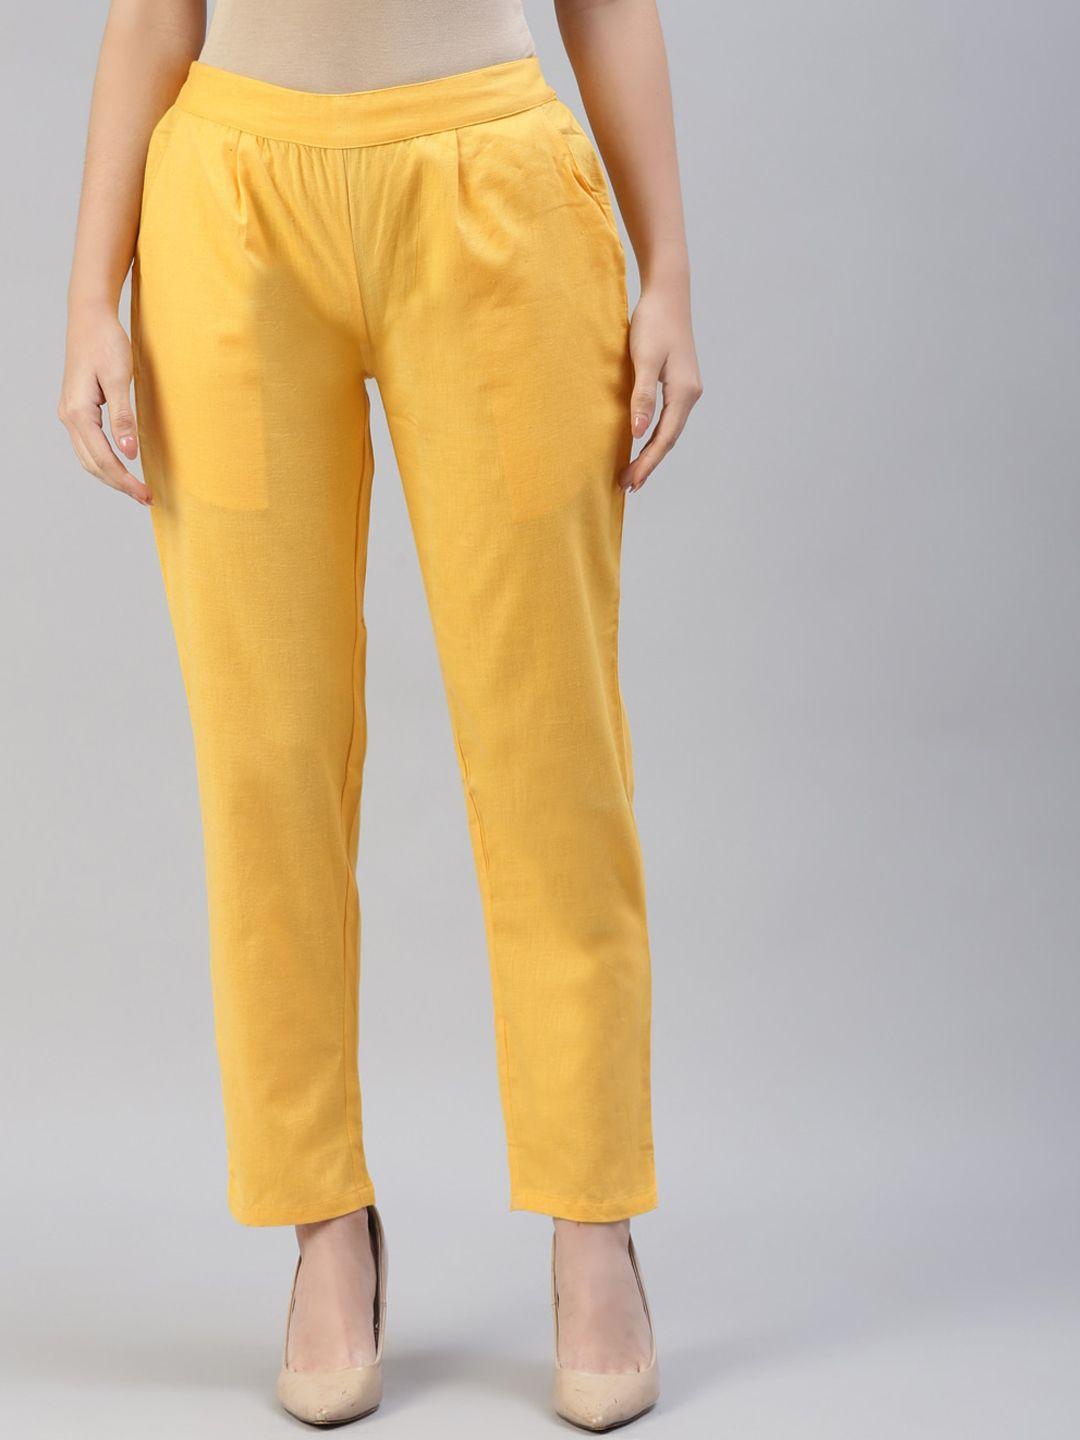 iridaa-jaipur-women-yellow-trousers